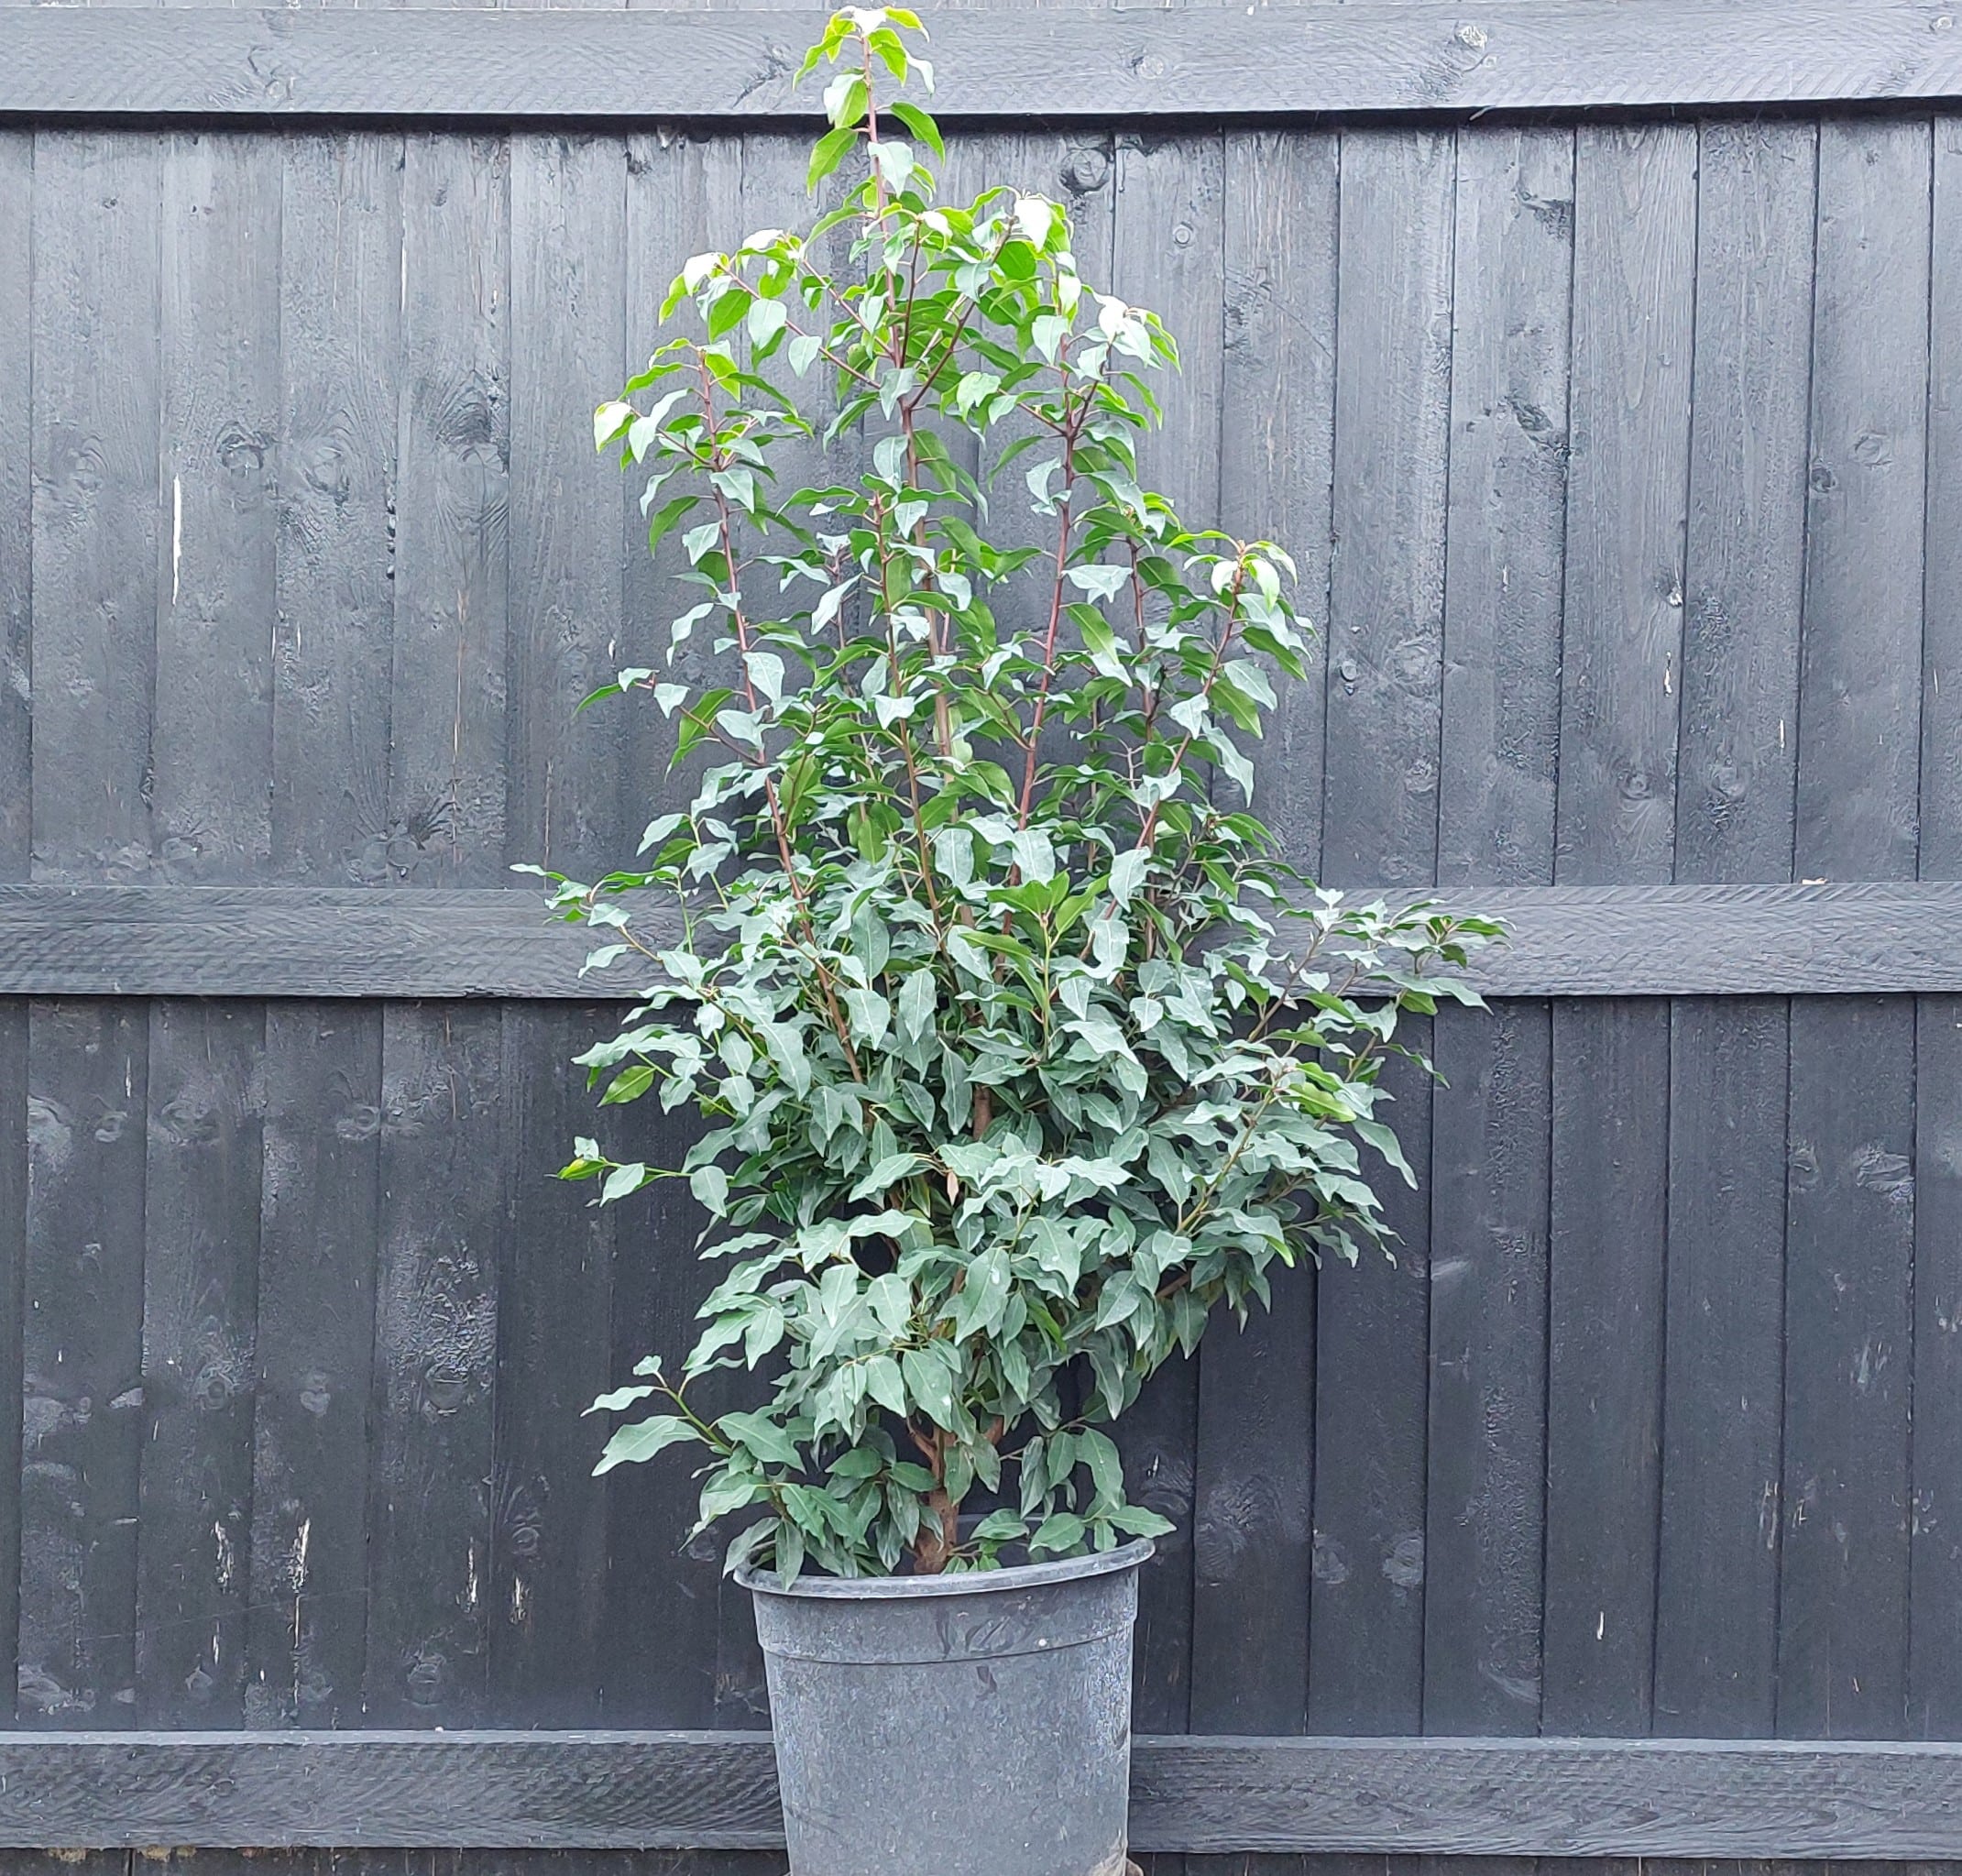 Prunus lusitanica – Portuguese laurel 1.2-1.4m tall